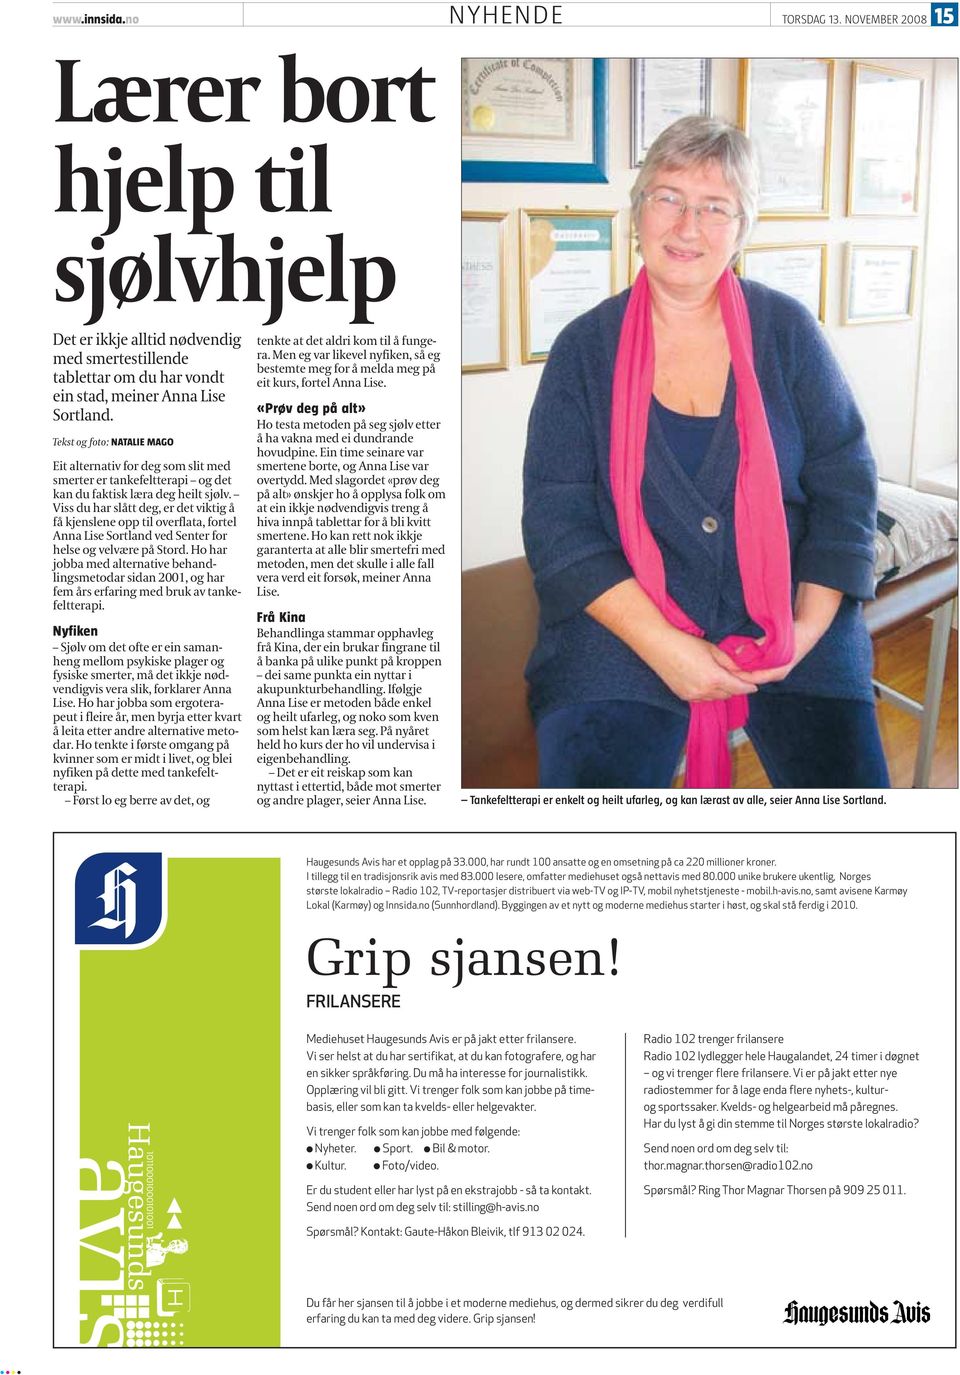 Viss du har slått deg, er det viktig å få kjenslene opp til overflata, fortel Anna Lise Sortland ved Senter for helse og velvære på Stord.